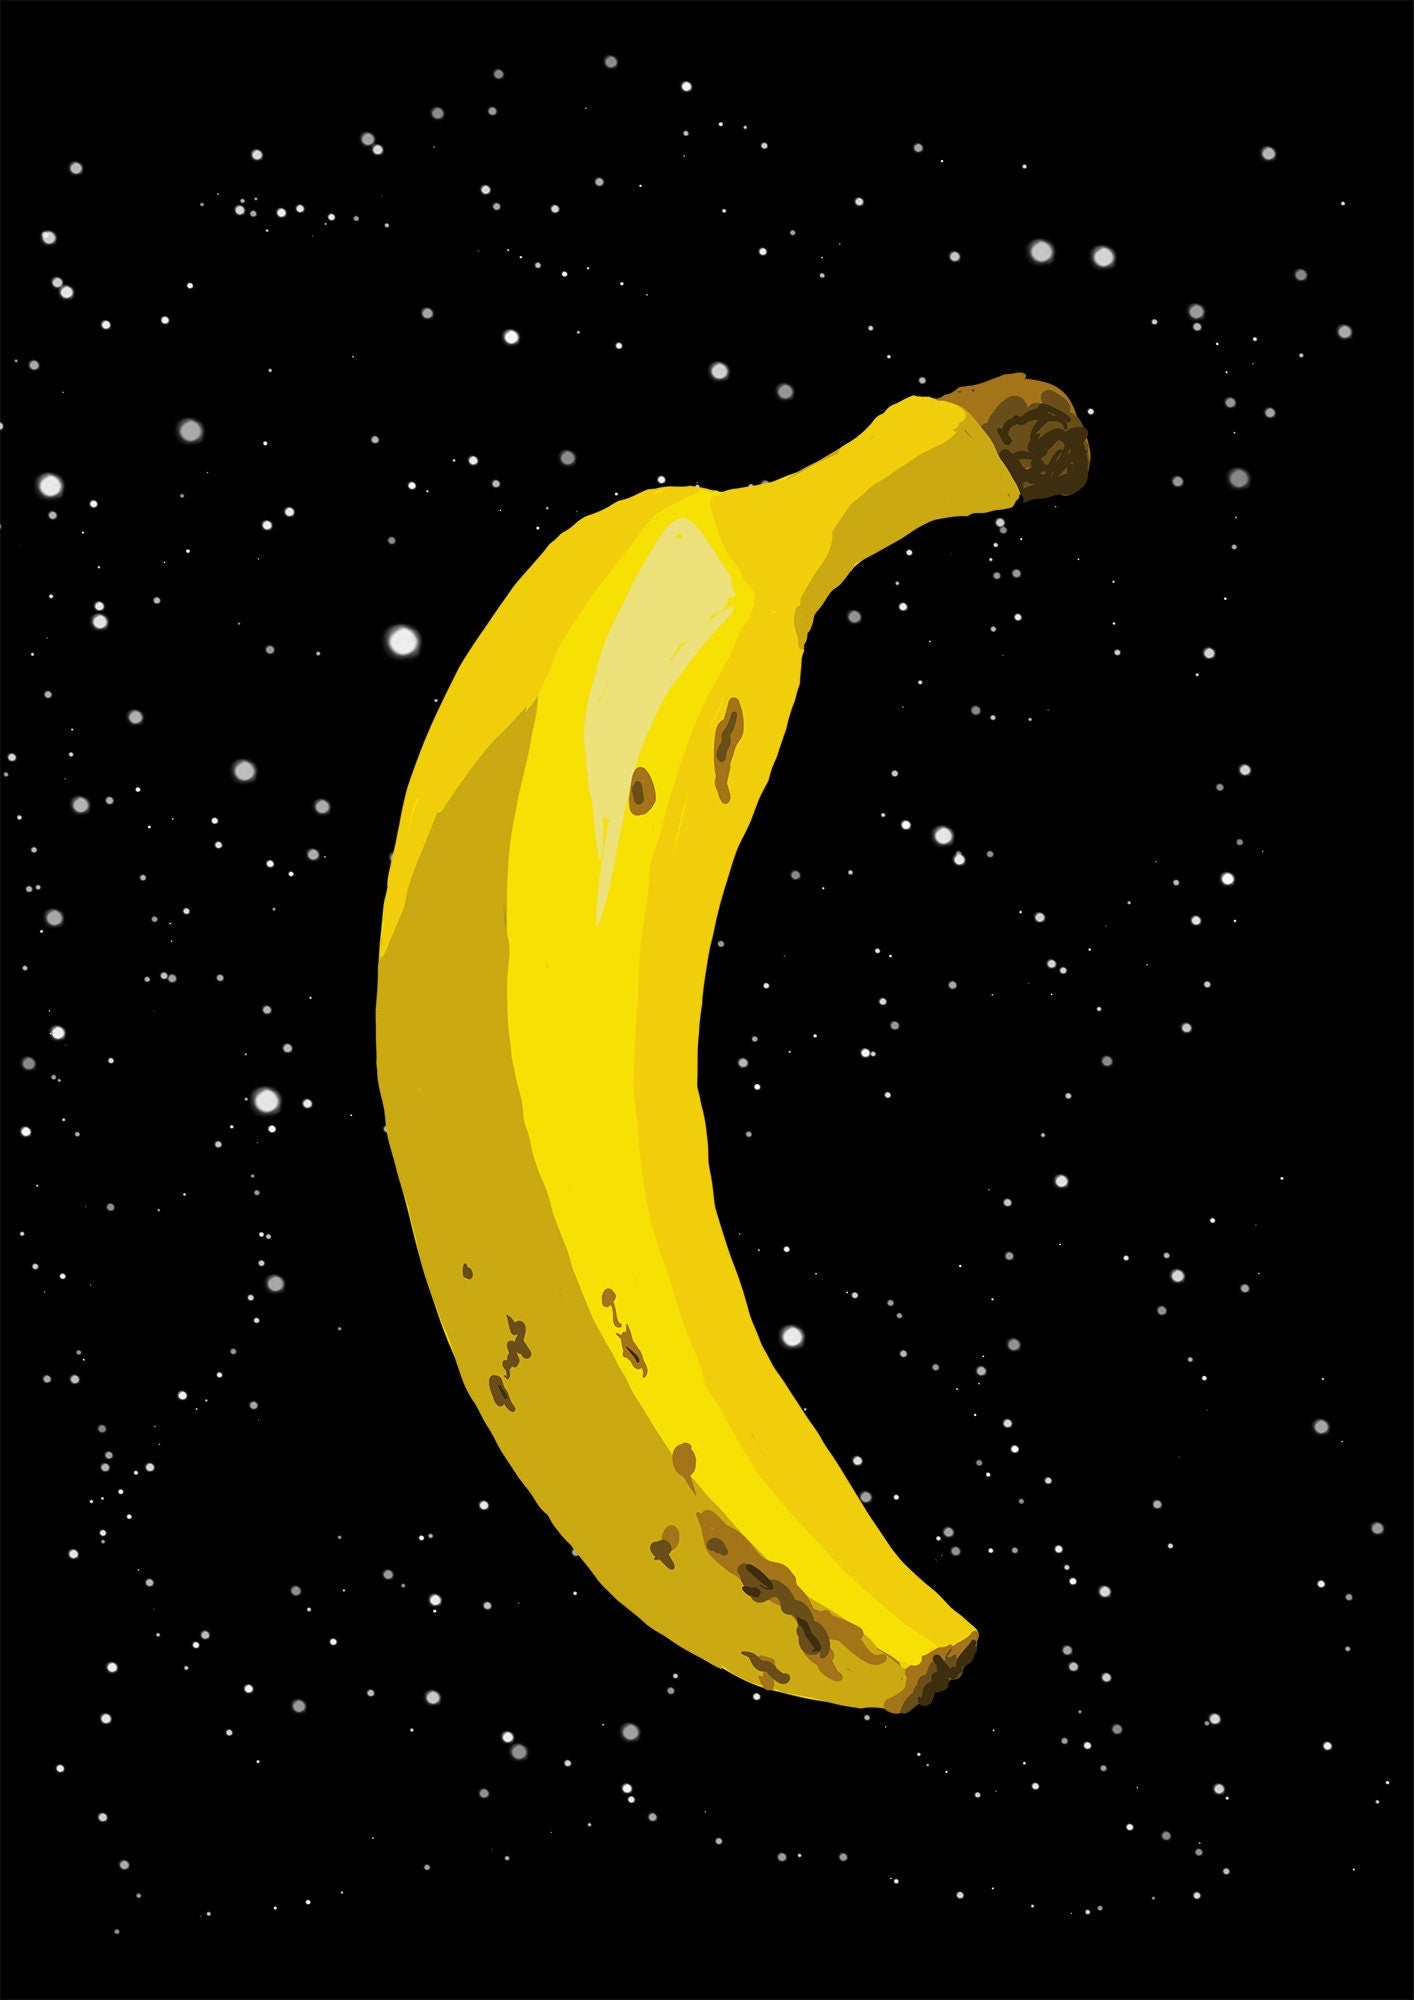 Banana in outer space art print, unframed, Digital Art Print, Pop Art Poster, Quirky Wall Decor, Weird art, UFO poster, Banana Wall Art